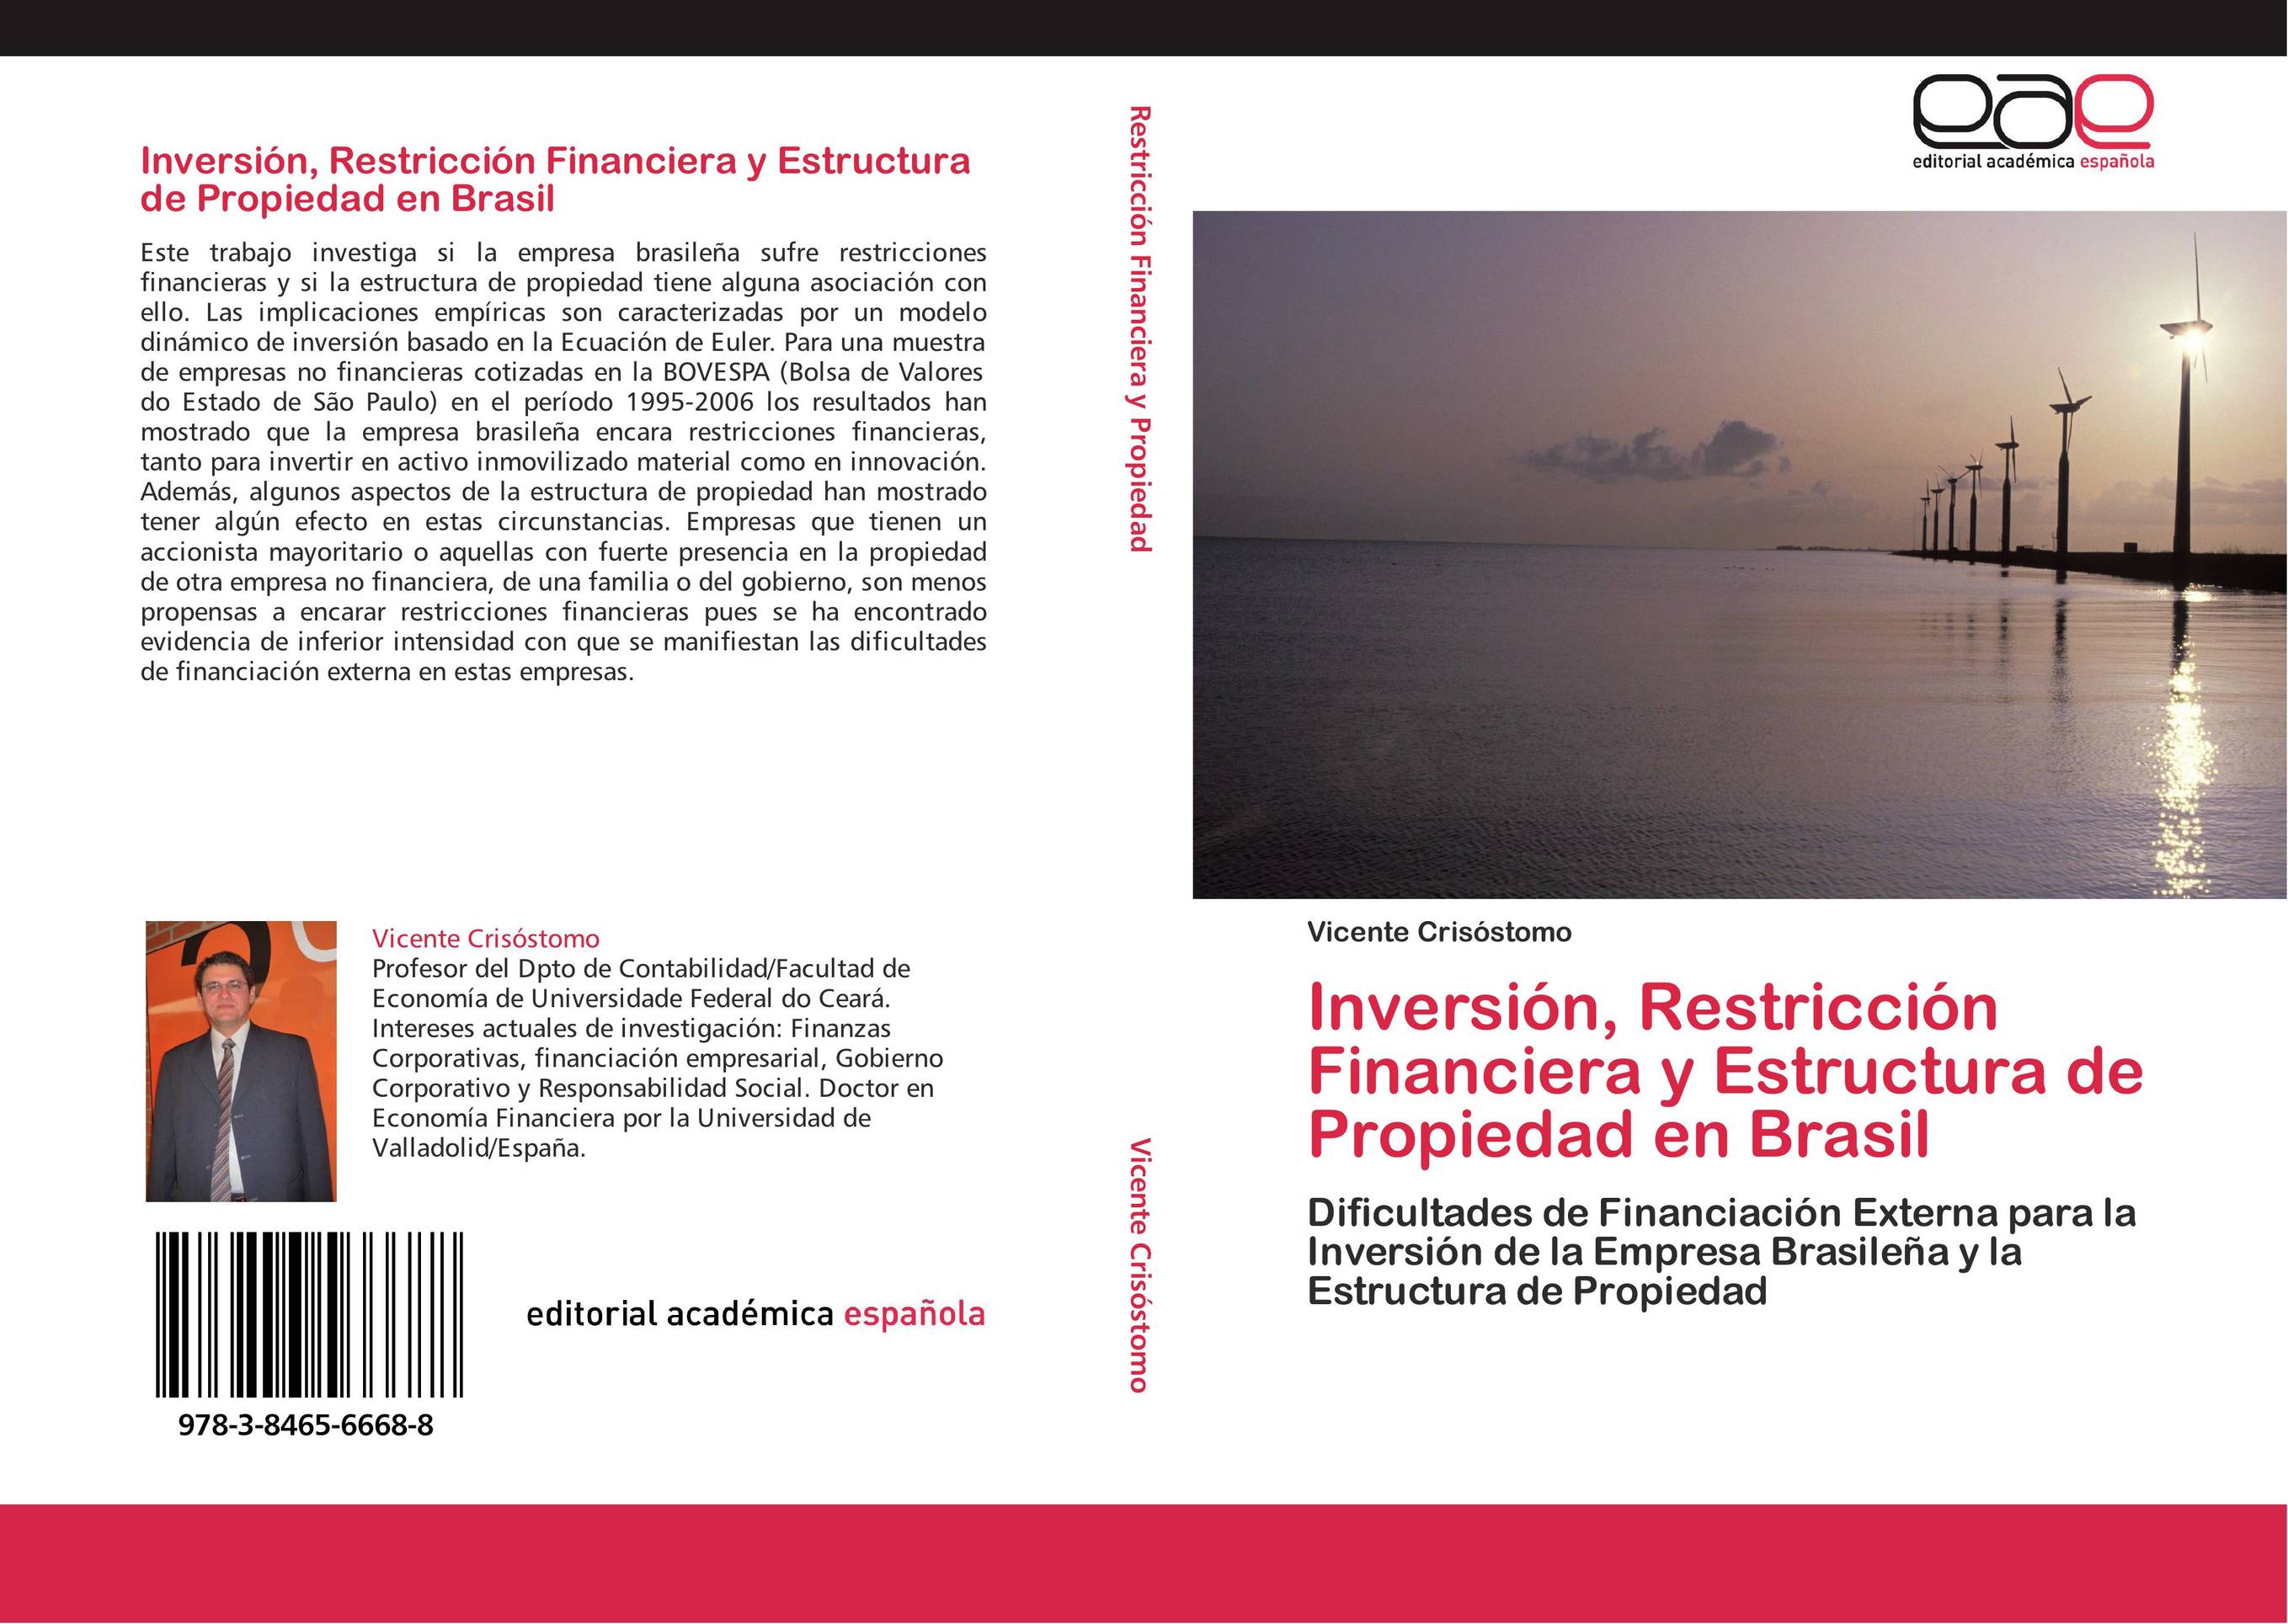 Inversión, Restricción Financiera y Estructura de Propiedad en Brasil